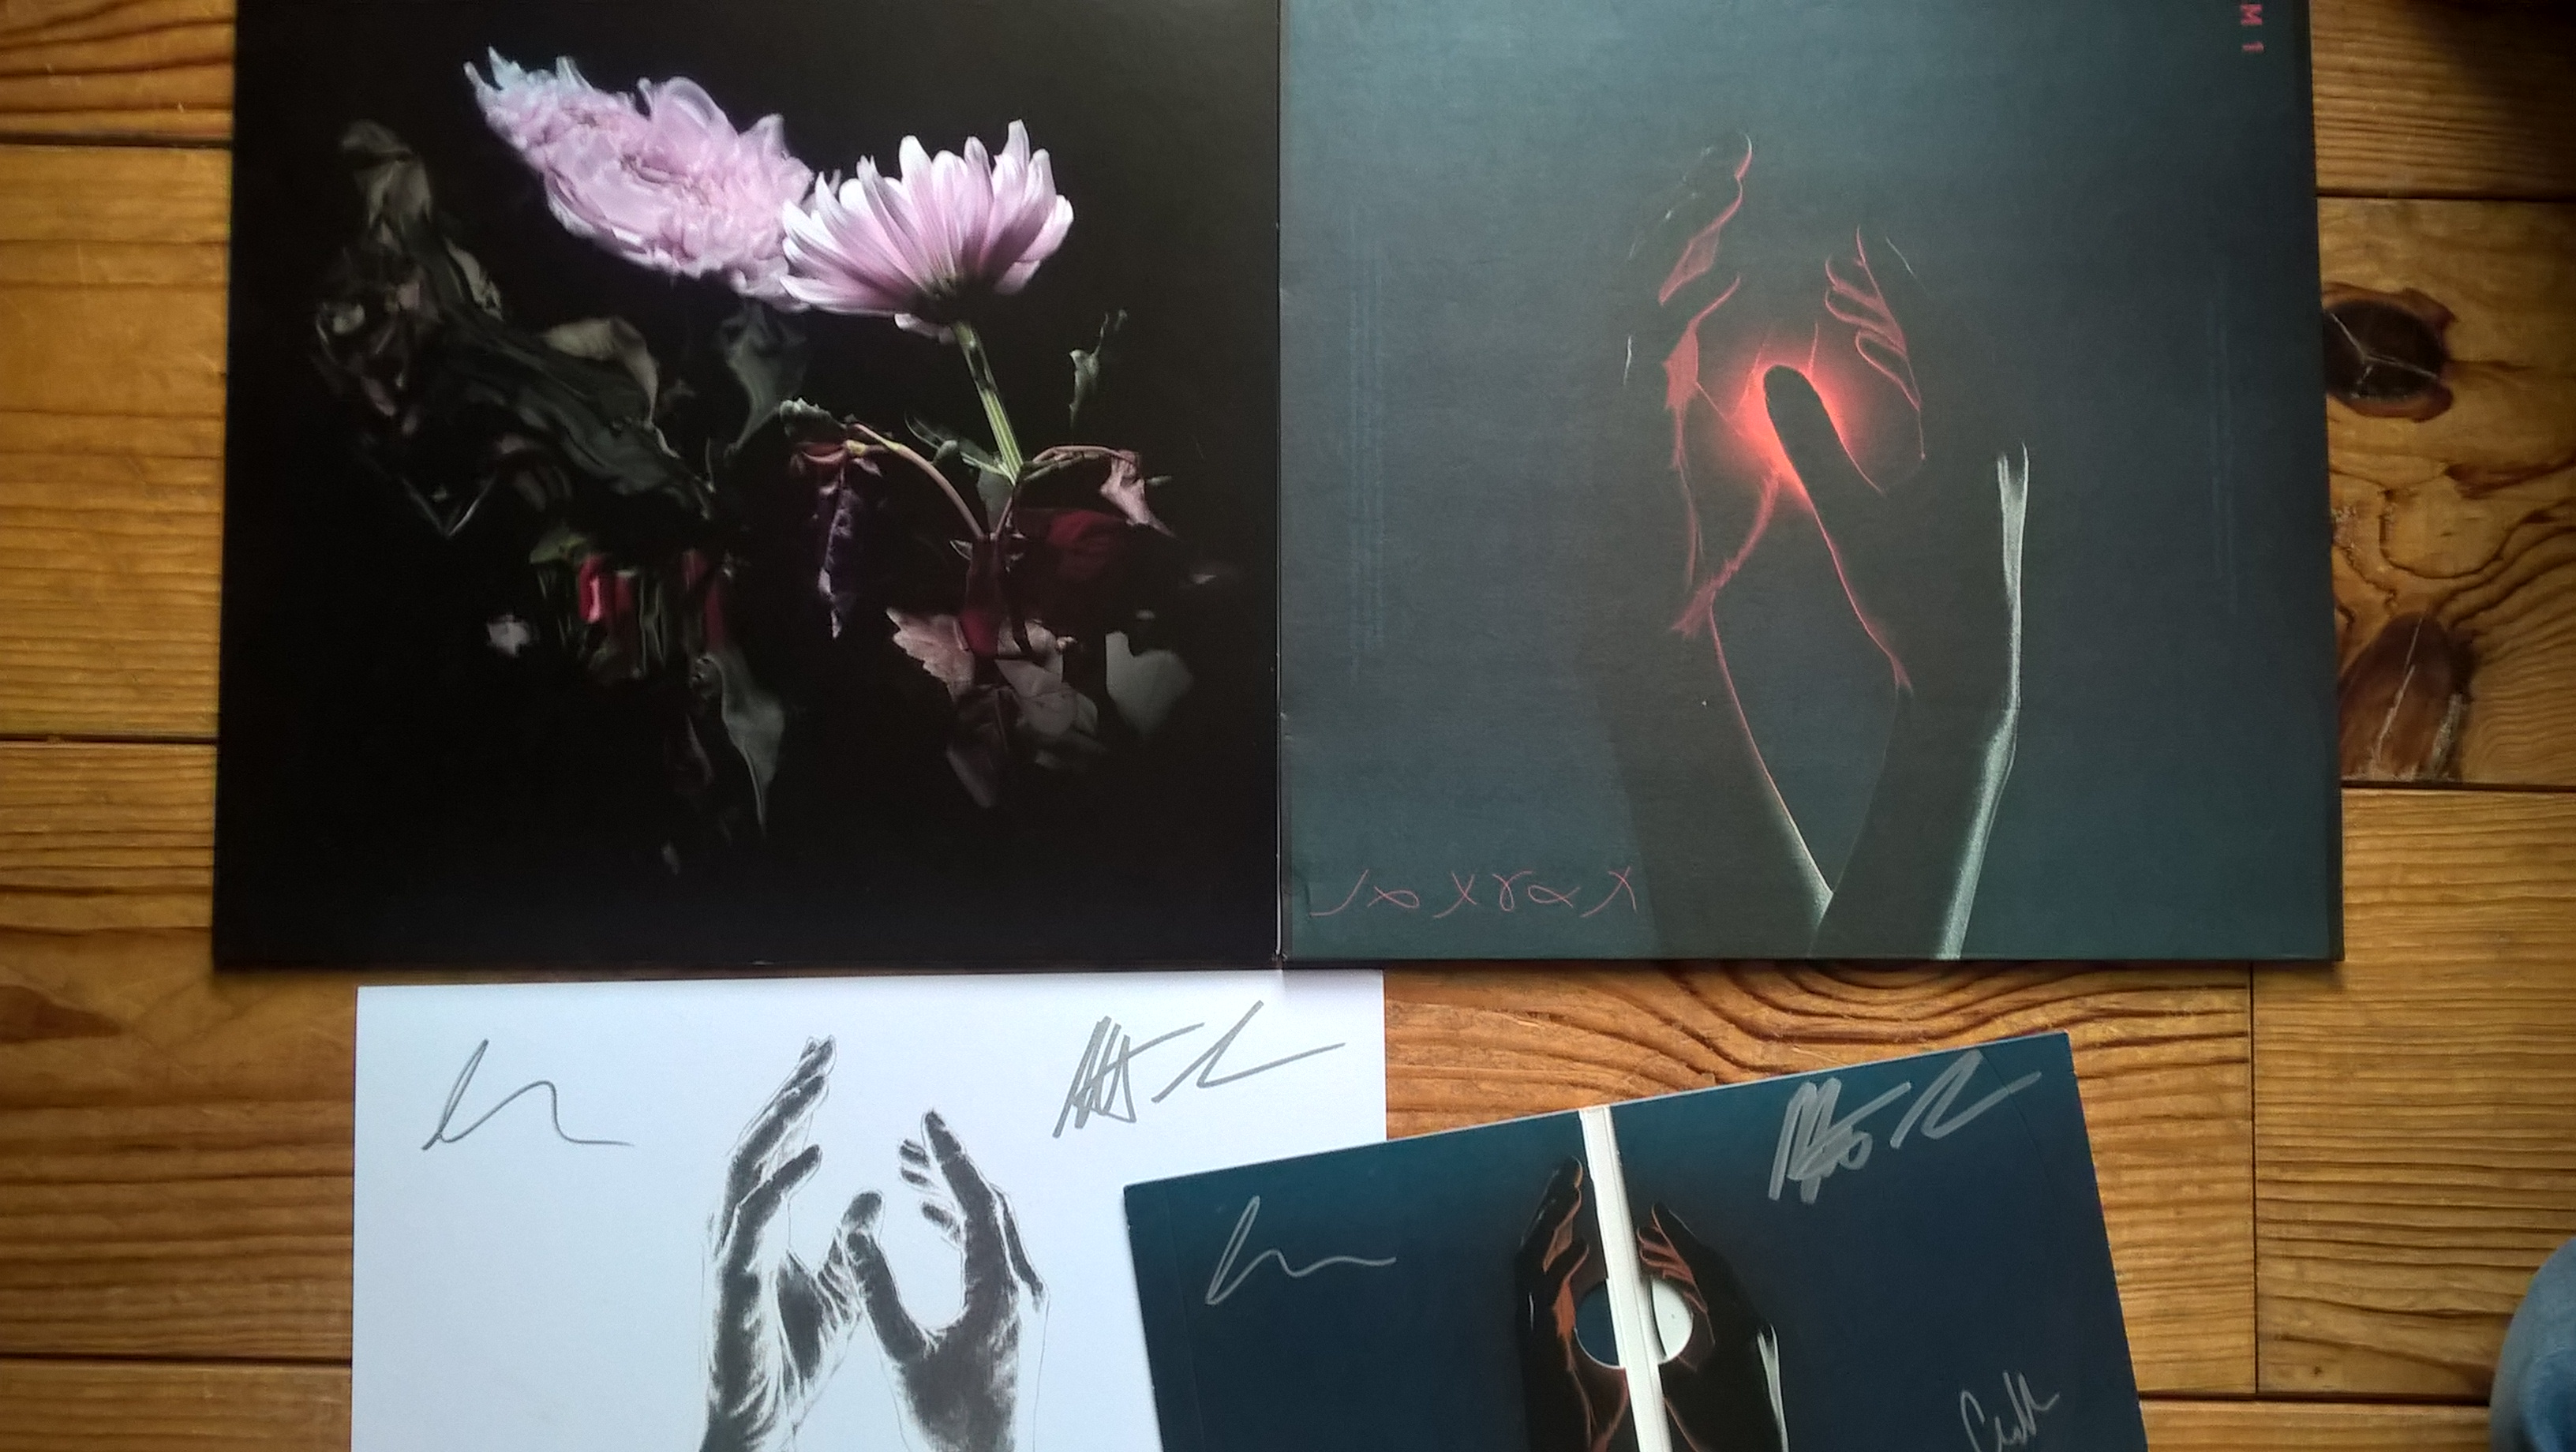 A gauche, le maxi vinyle de "Loveless"/ A droite le 1er album de Lo Moon